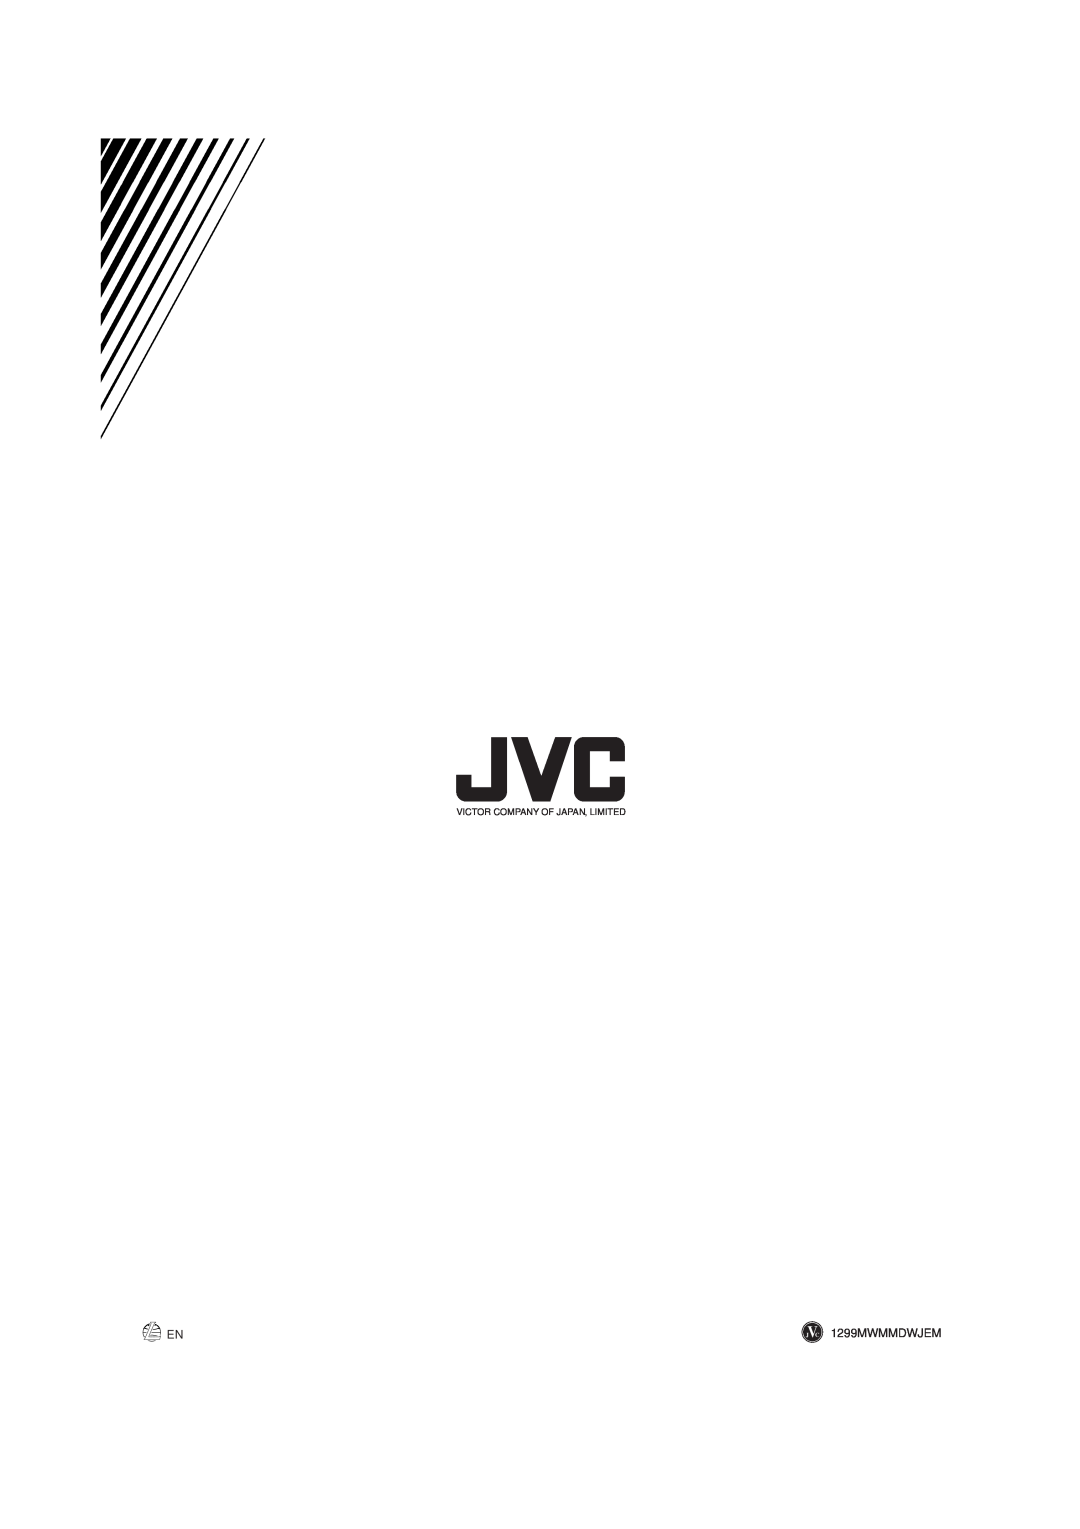 JVC SP-MXJ700, SP-MXJ500 manual 1299MWMMDWJEM, Victor Company Of Japan, Limited 